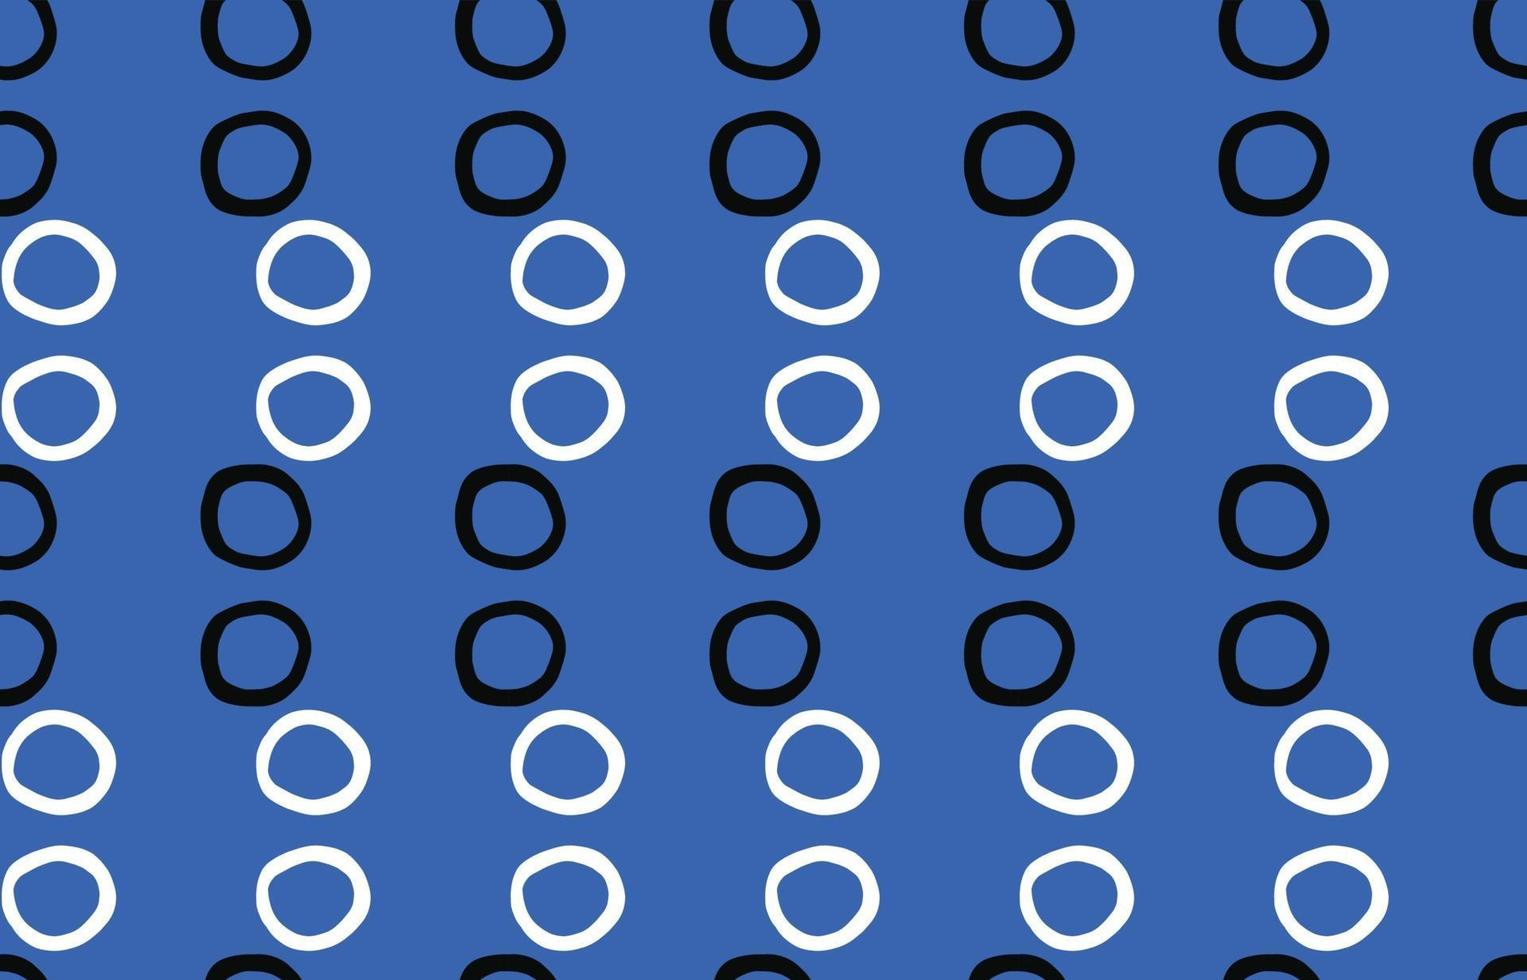 Vektor Textur Hintergrund, nahtloses Muster. handgezeichnete, blaue, schwarze, weiße Farben.